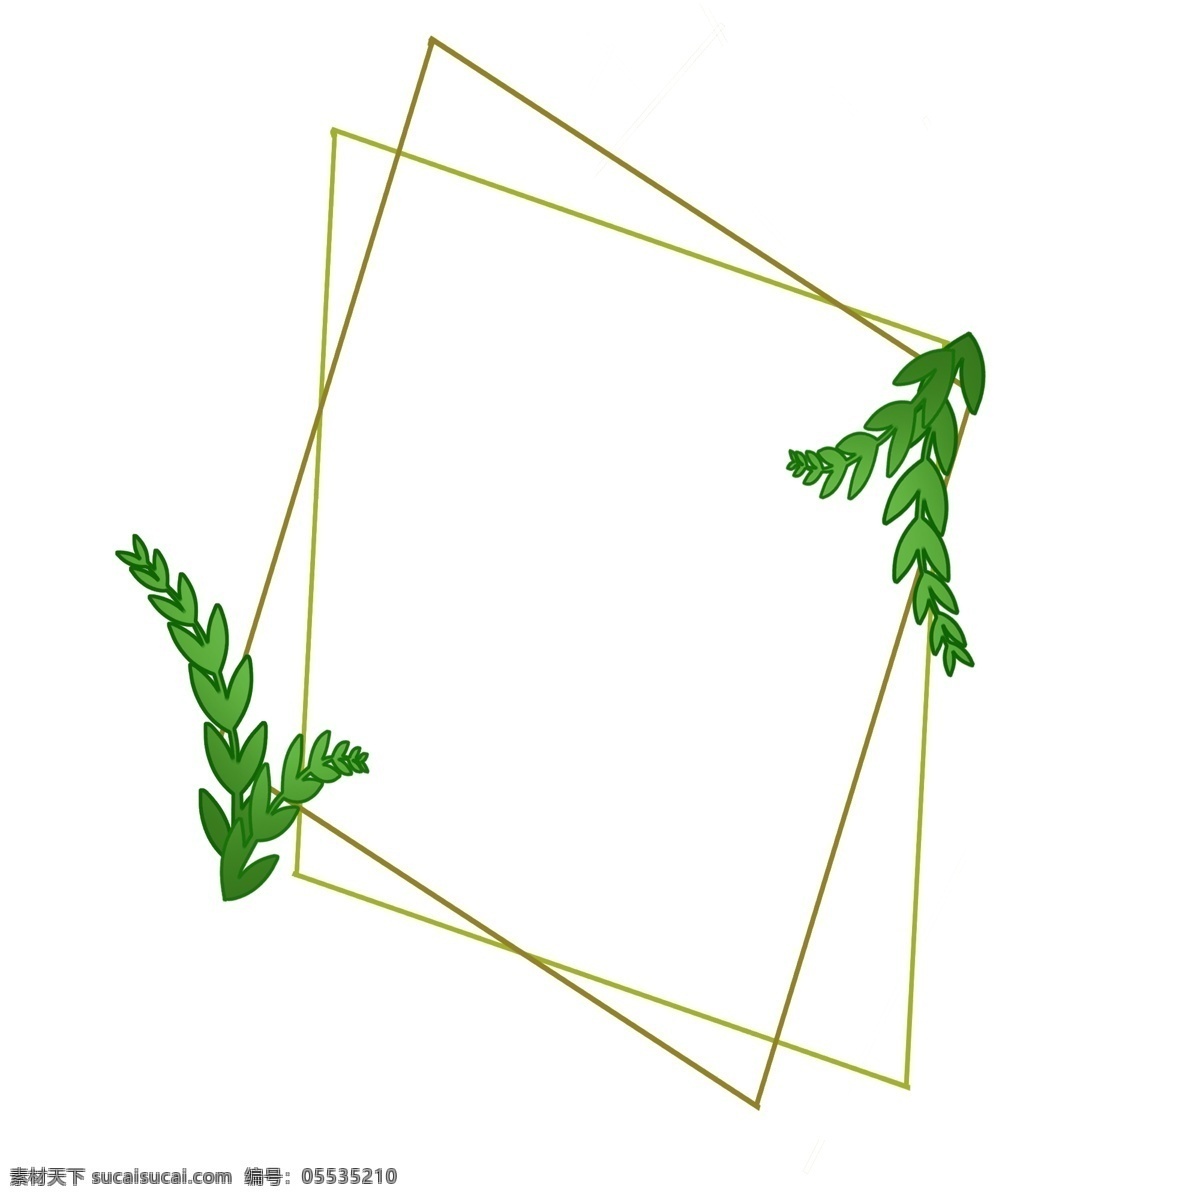 菱形 叶子 边框 插画 线条菱形 植物叶子